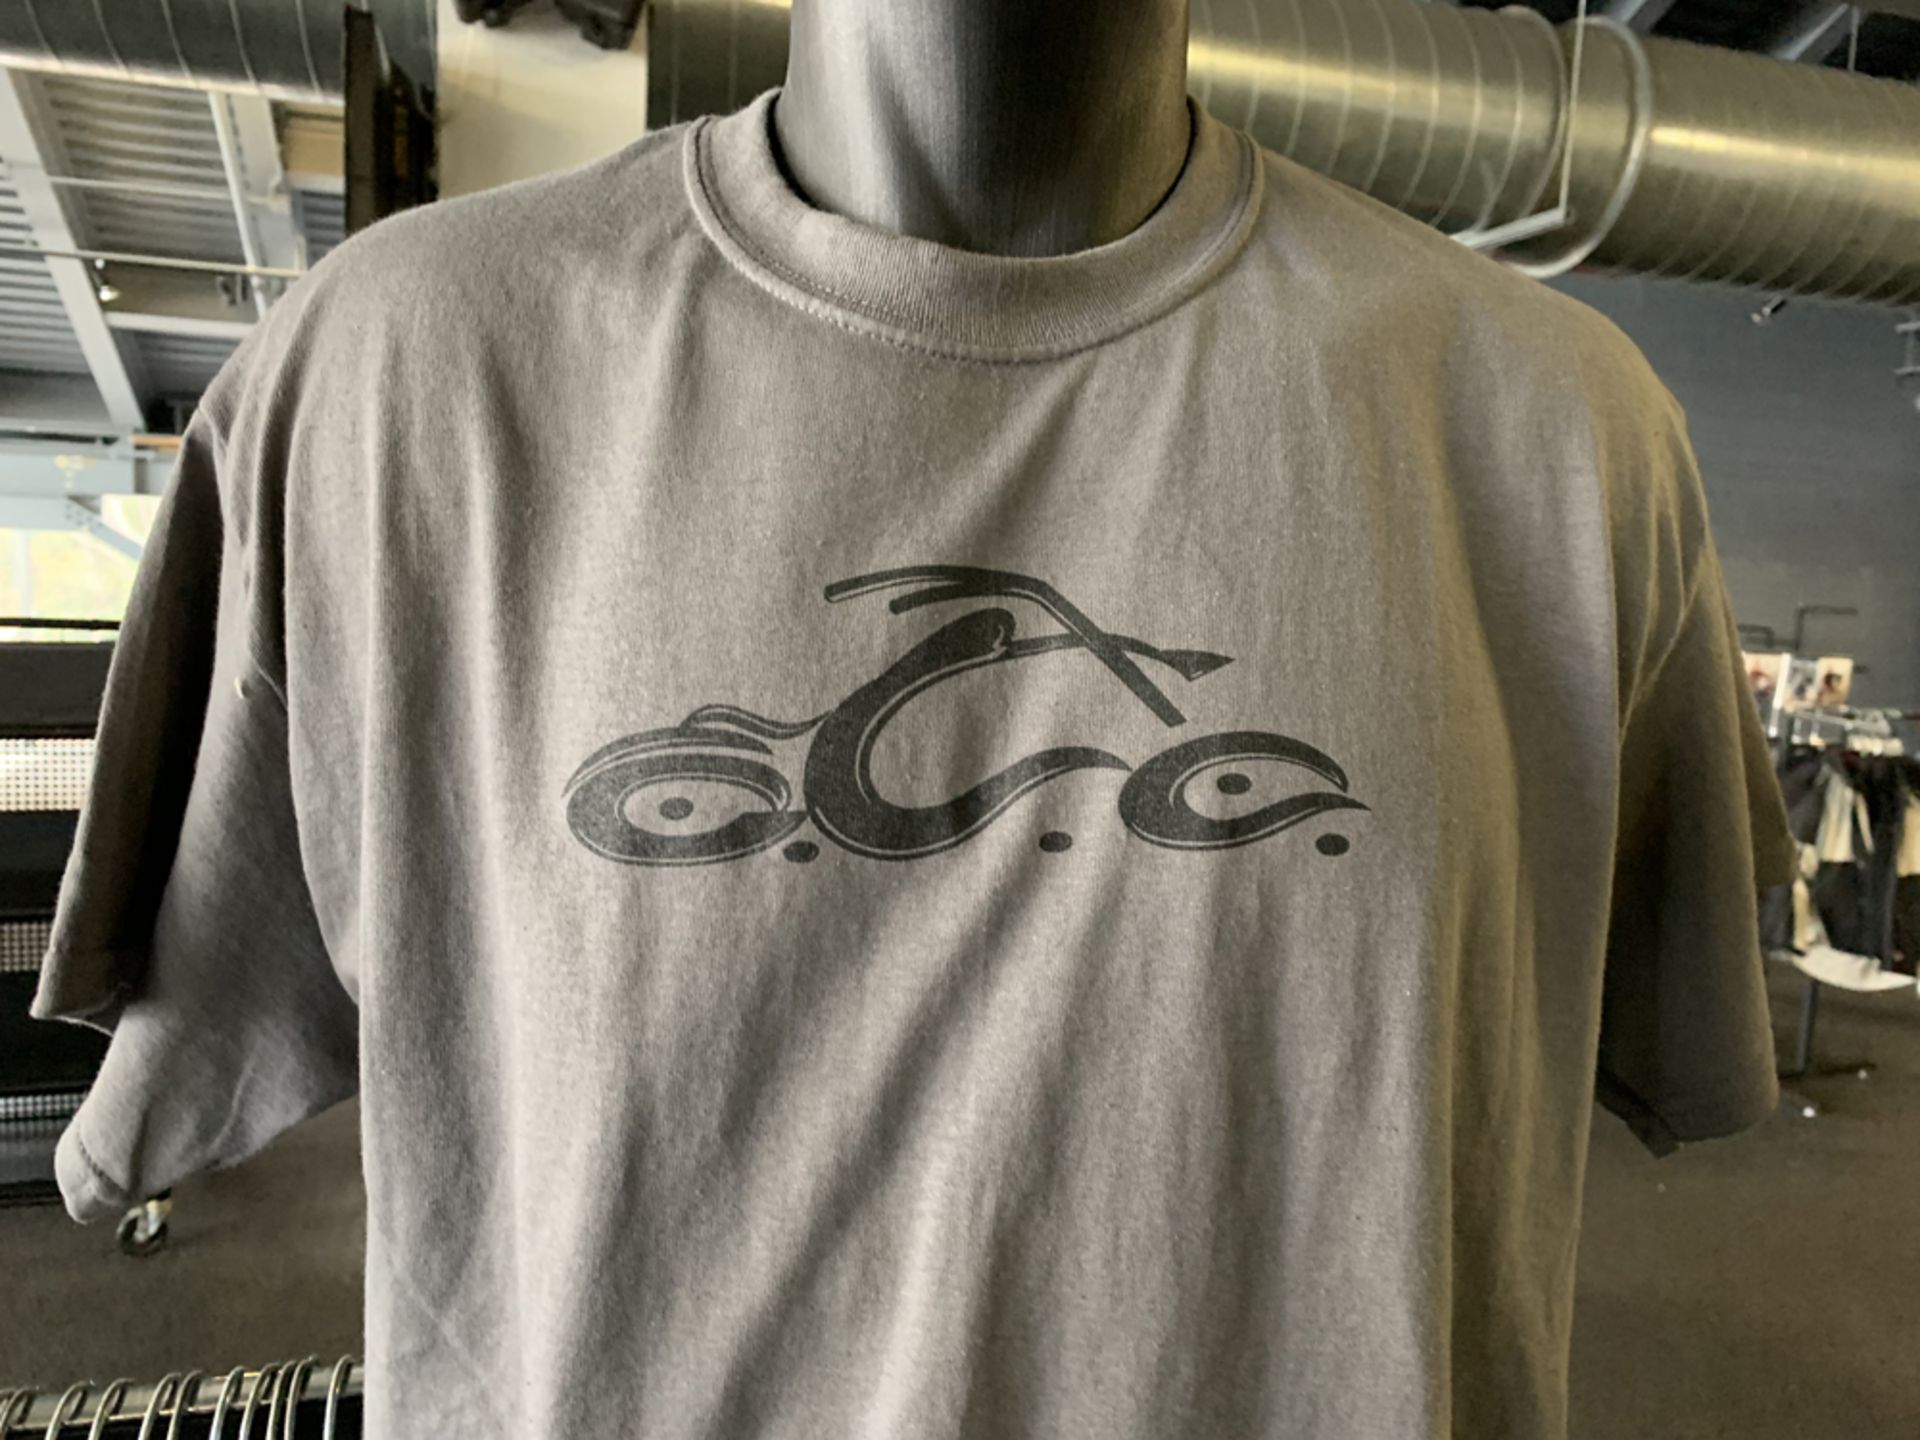 OCC 20 Year Anniversary Ed. Tee Shirts - Image 2 of 3